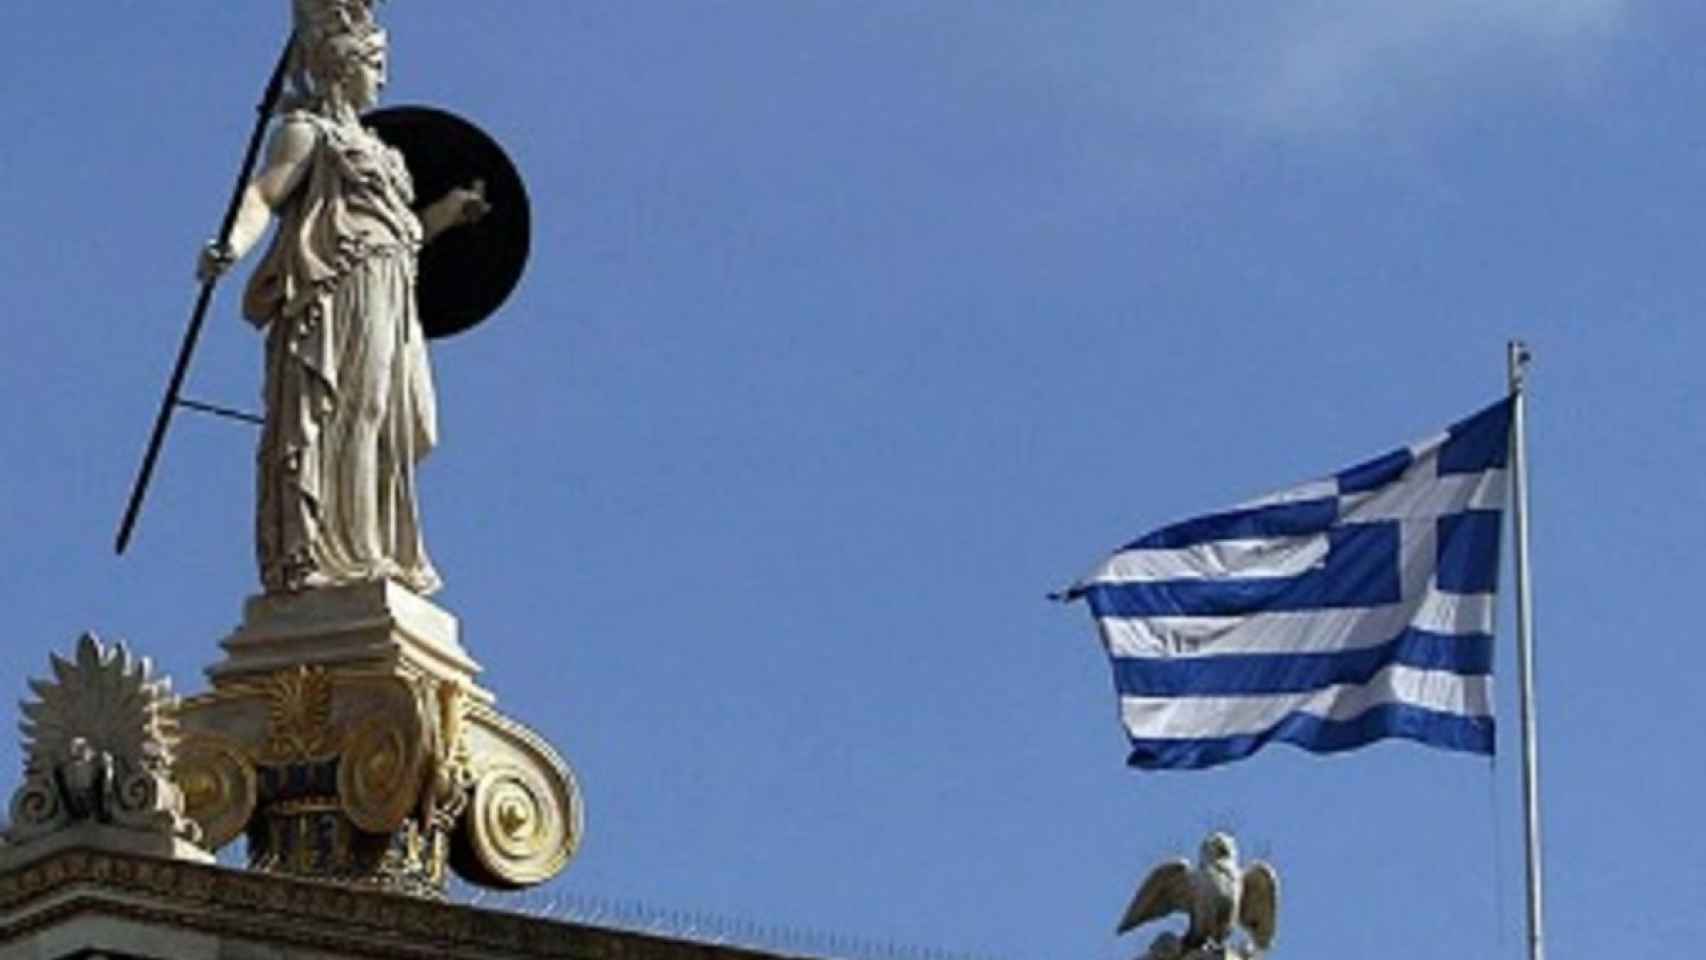 Grecia coloca las primeras letras del Tesoro de la era posrescate